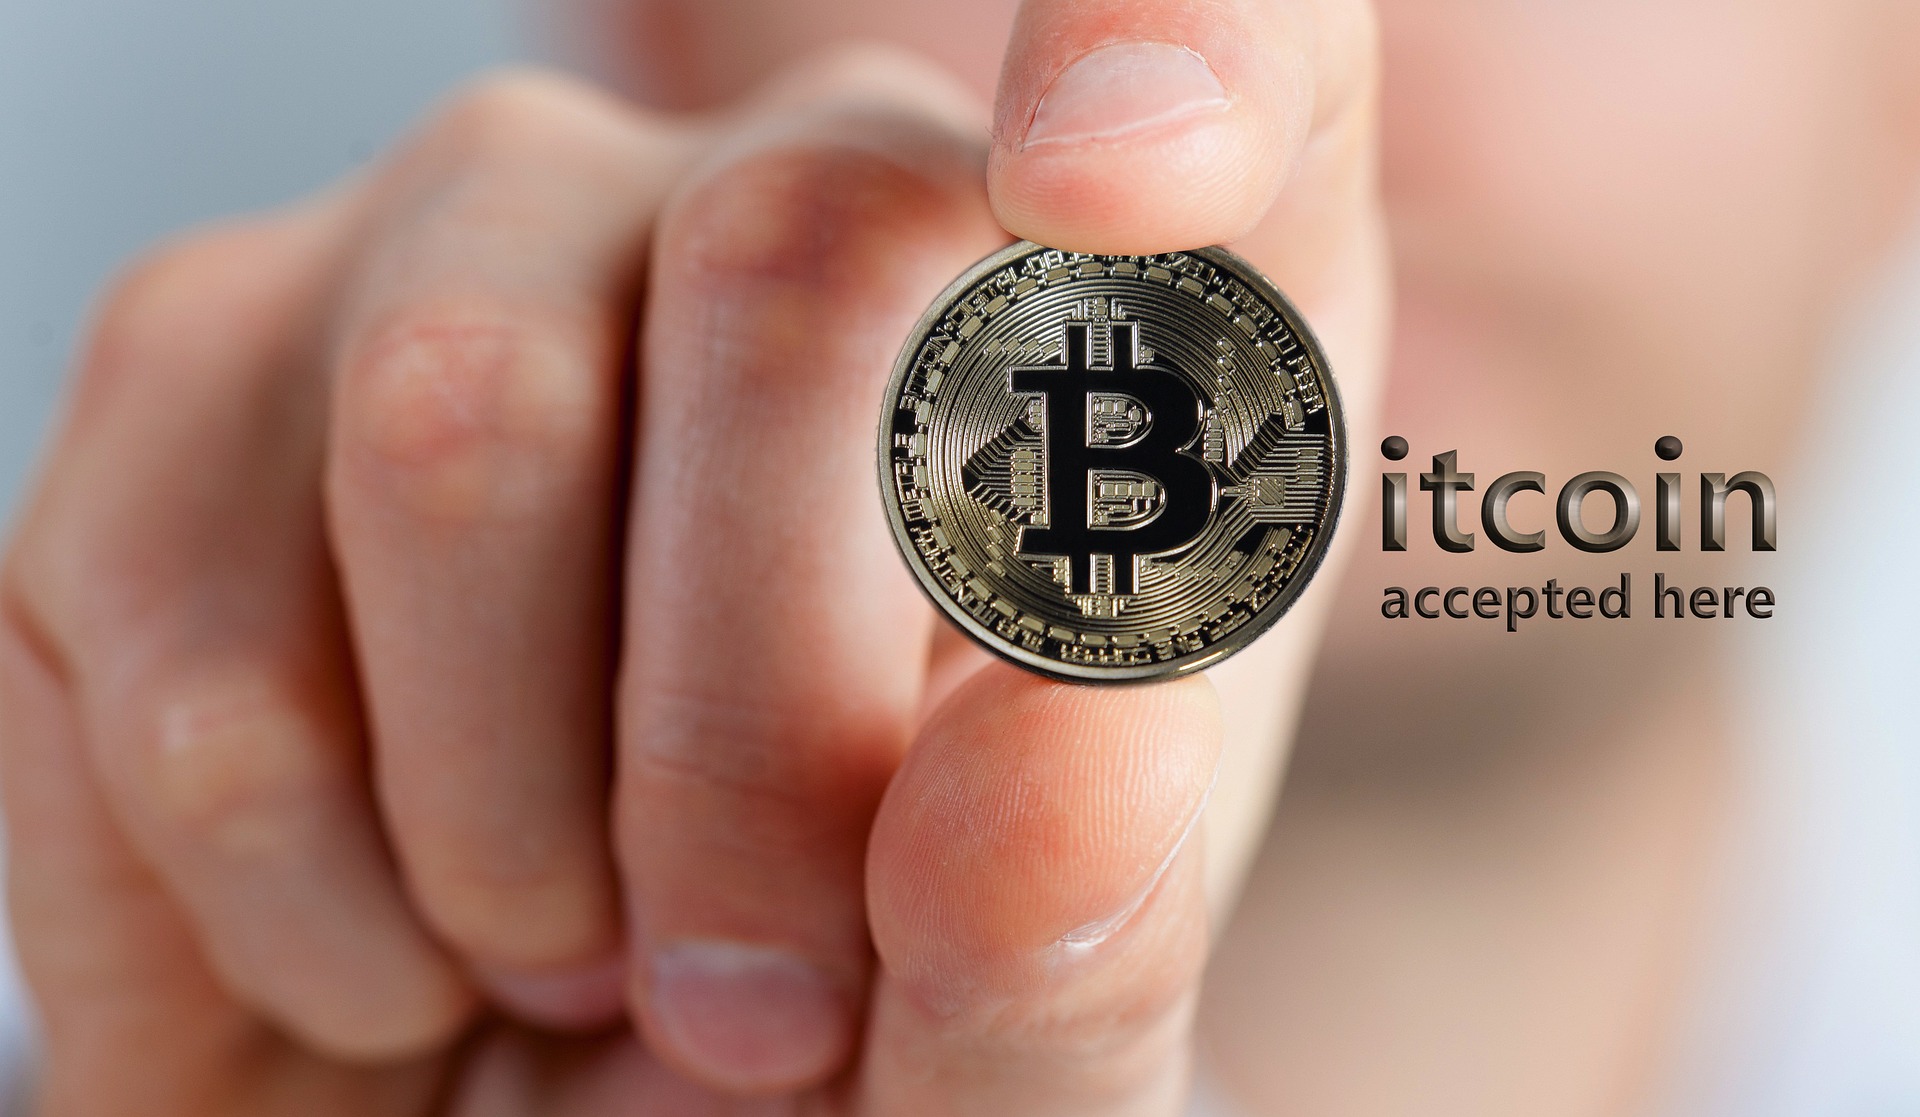 accept bitcoin in-person